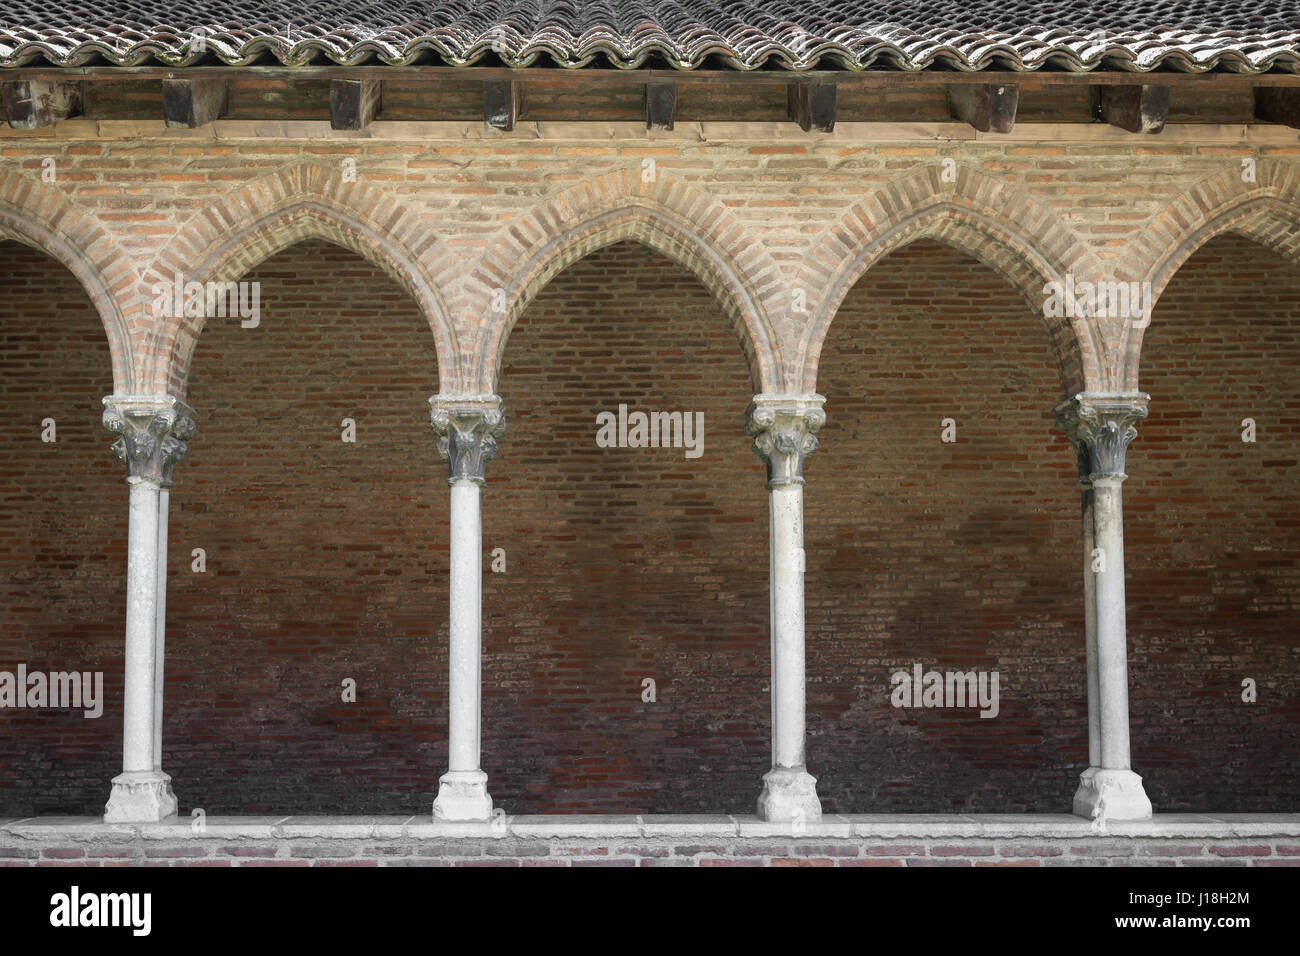 Le colonne e gli archi del chiostro nel monastero domenicano Couvent des giacobini di Tolosa, Francia. Foto Stock